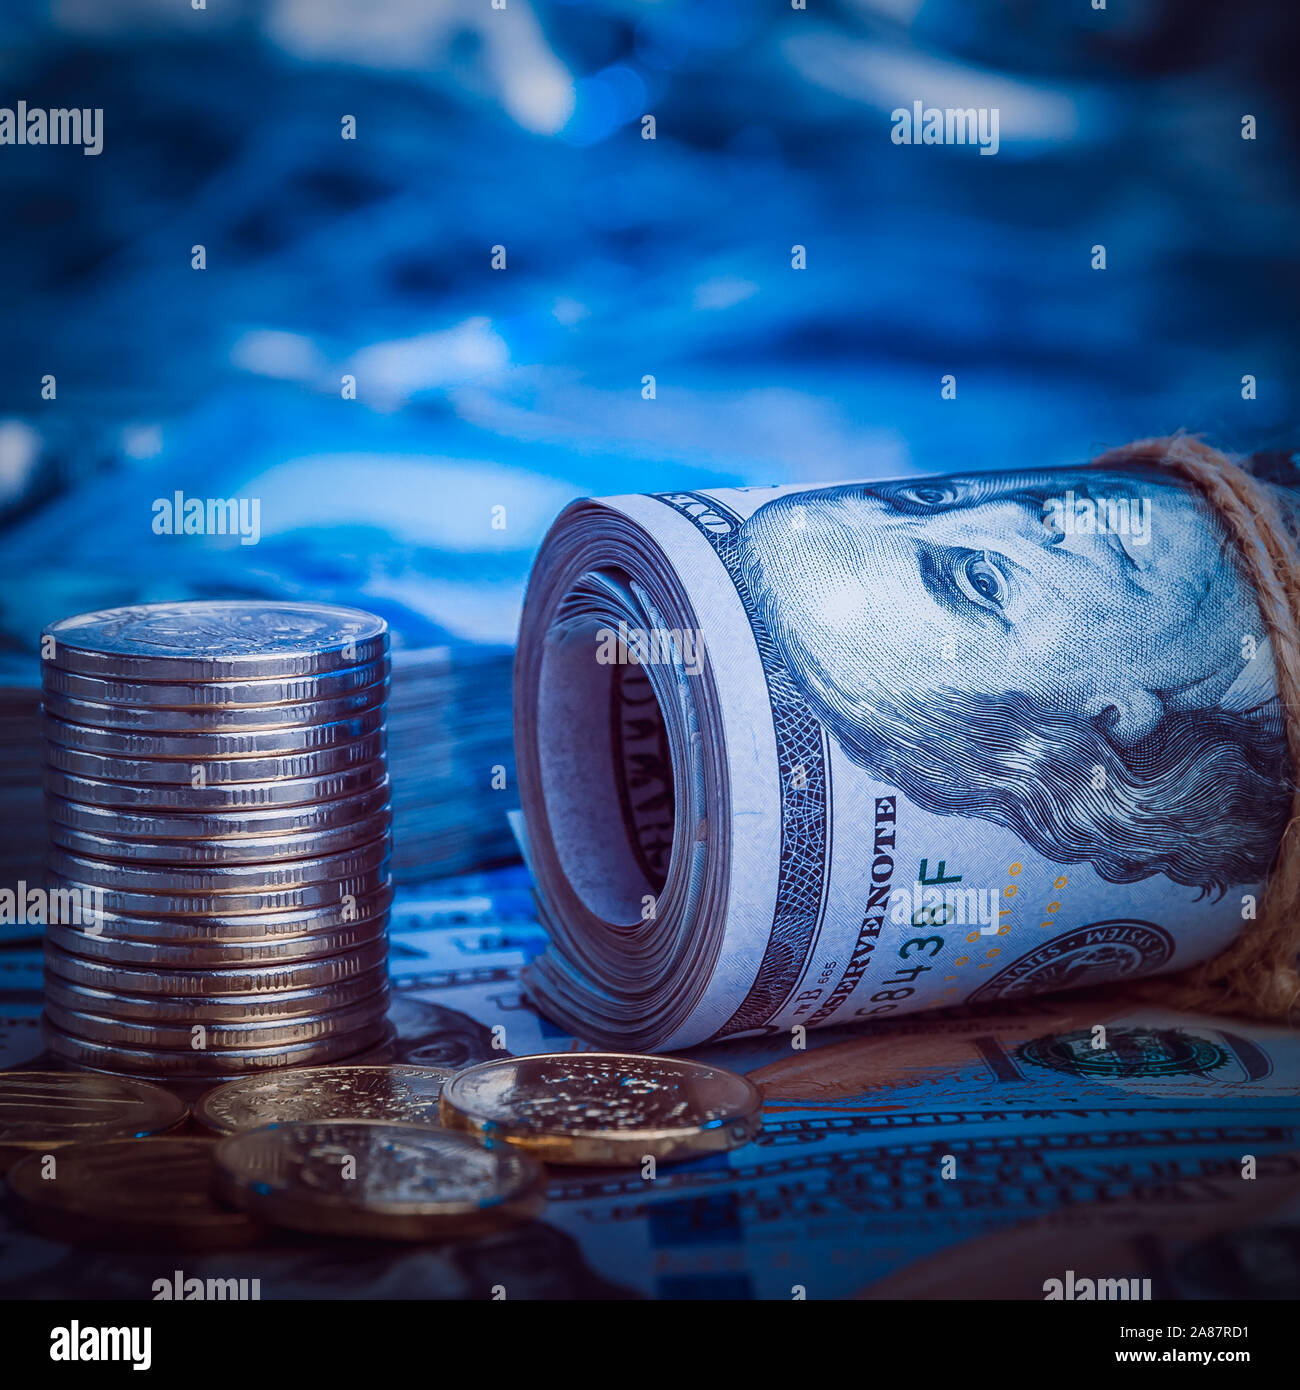 Синяя купюра. Синие деньги. Синяя денежка. Деньги на голубом. Обои с синими деньгами.